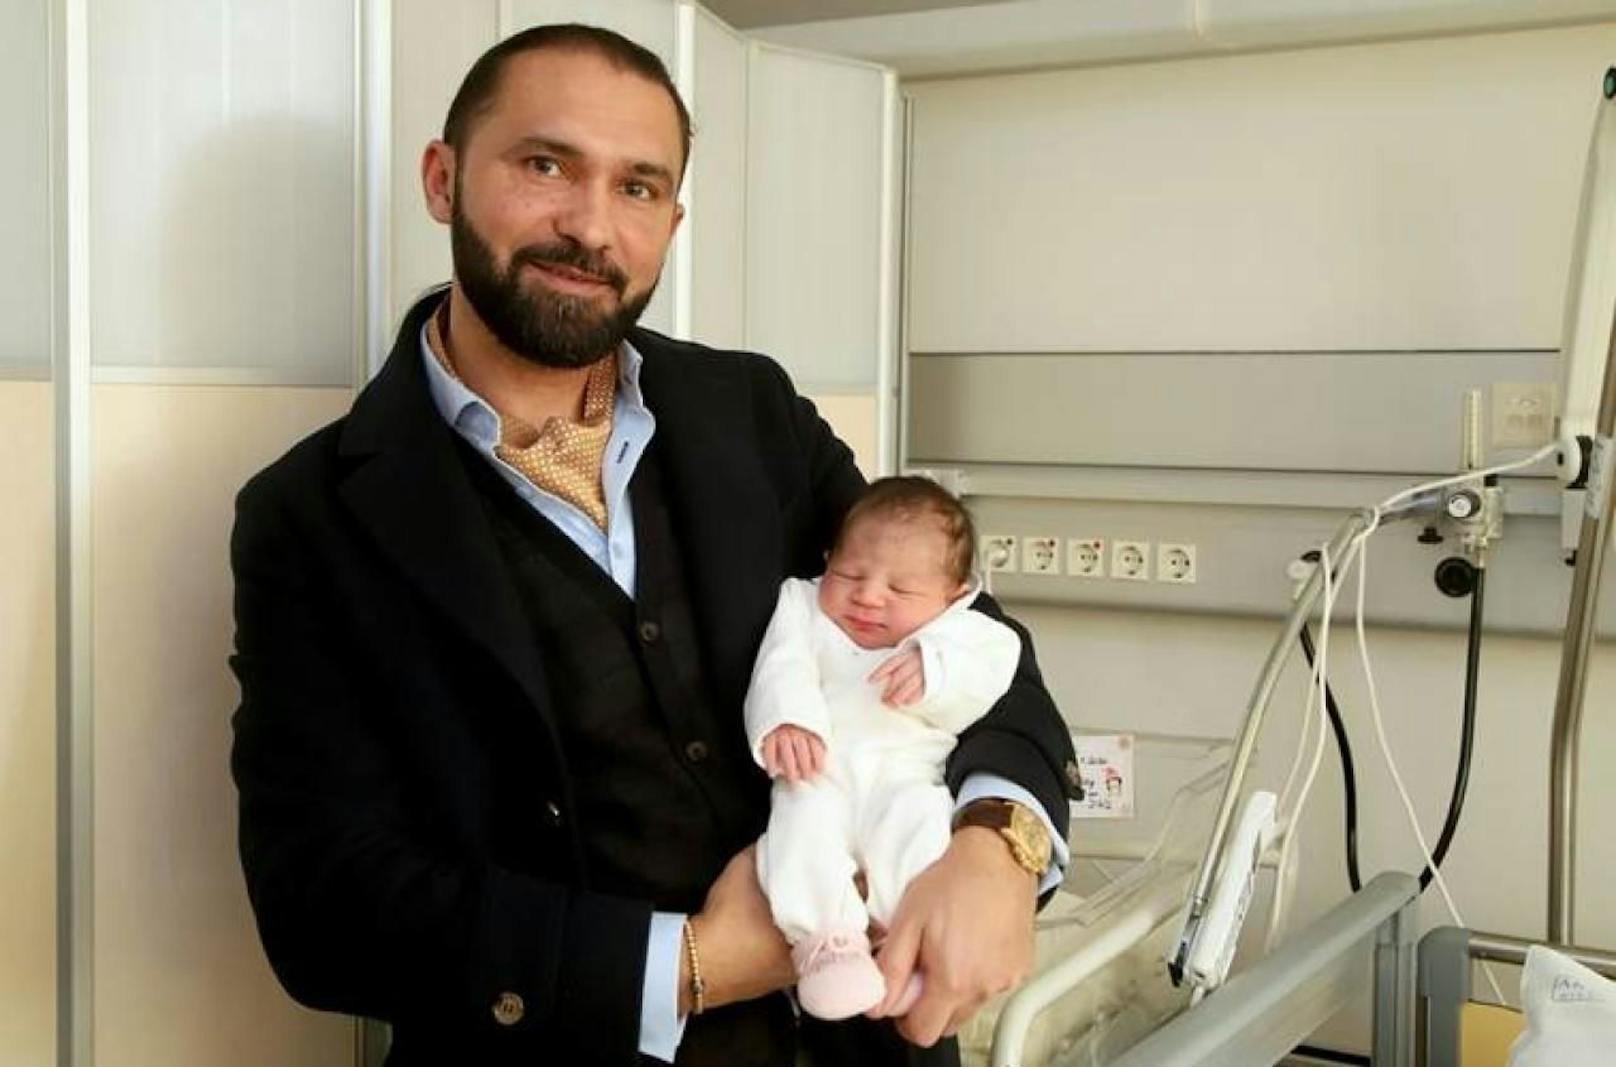 Die kleine Tiffany-Cataleya-Chloe ist das erste Baby, das im neuen Jahr in einem Spital des Wiener Krankenanstaltenverbundes (KAV) zur Welt gekommen ist. Ihr Opa ist sichtlich stolz auf sein süßes Enkerl.